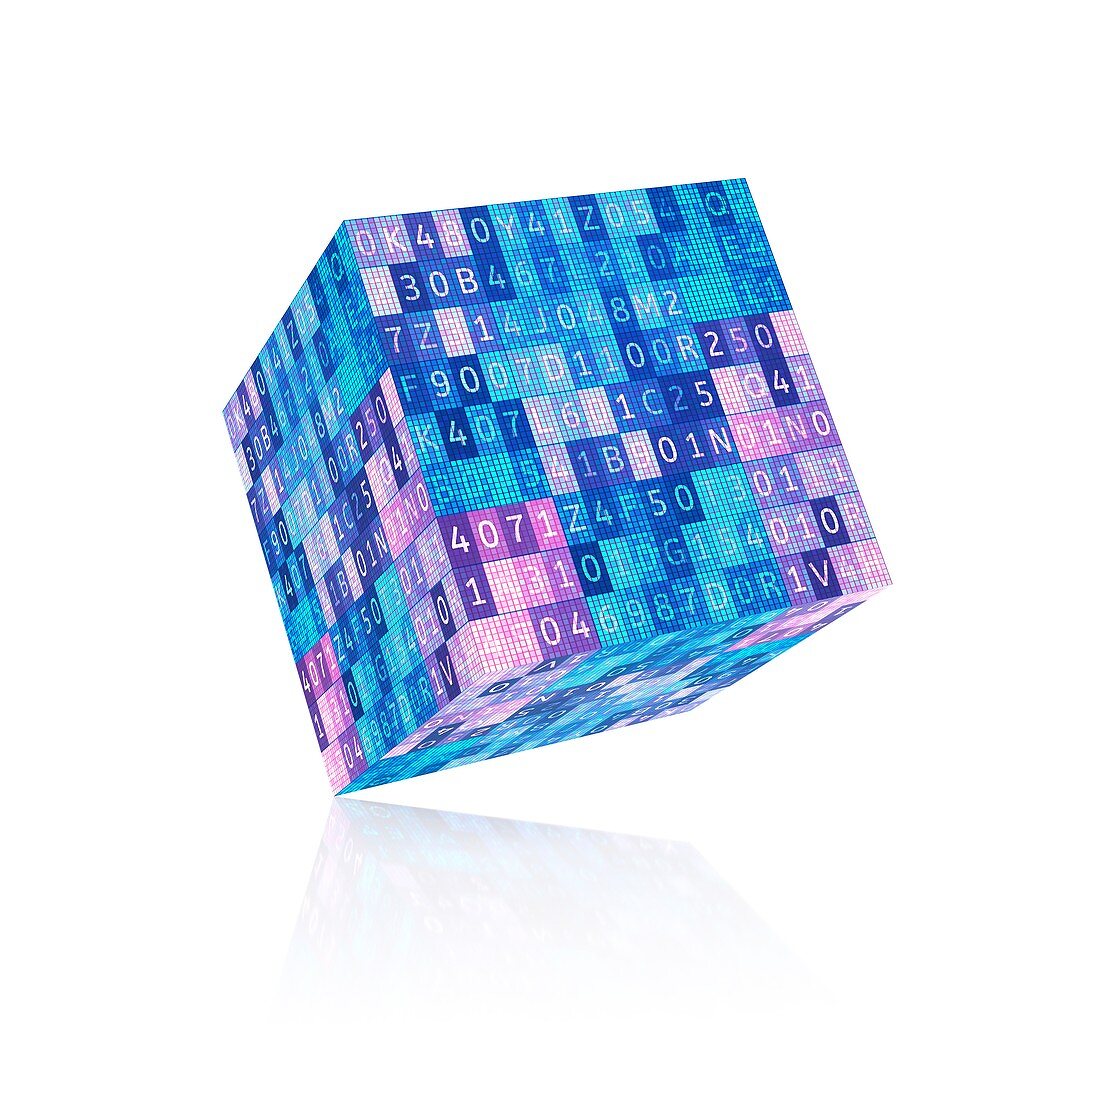 Digital cube, illustration